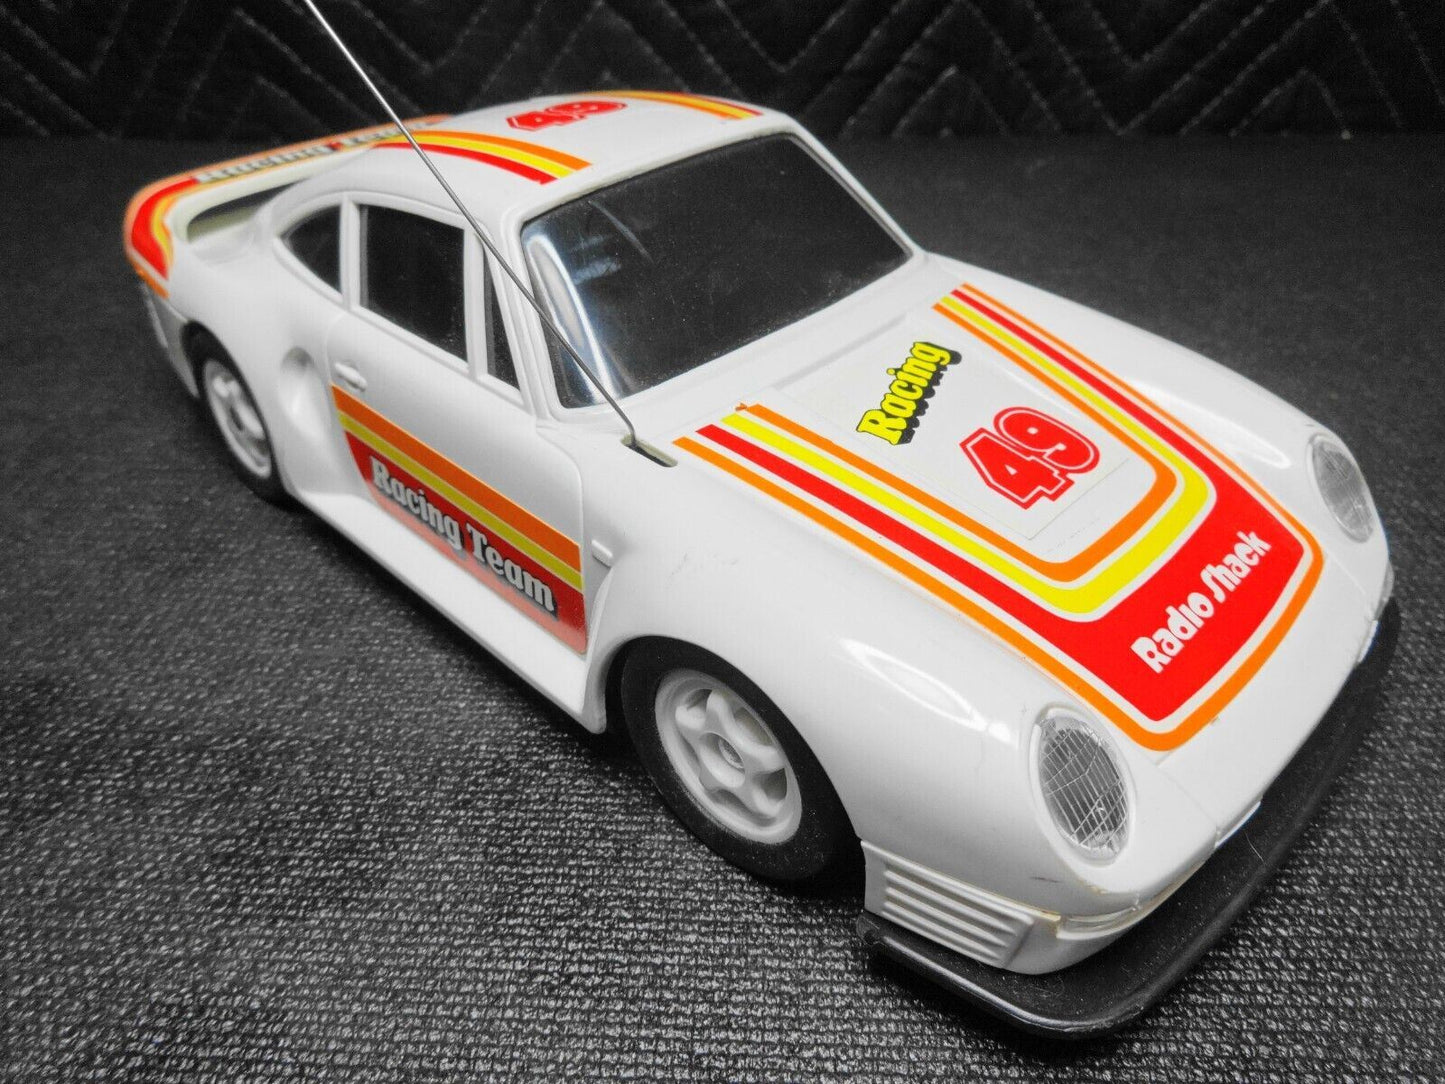 Vintage Radio Shack Remote Control Porsche - Racing Team 49 RC R/C Car - CLEAN!